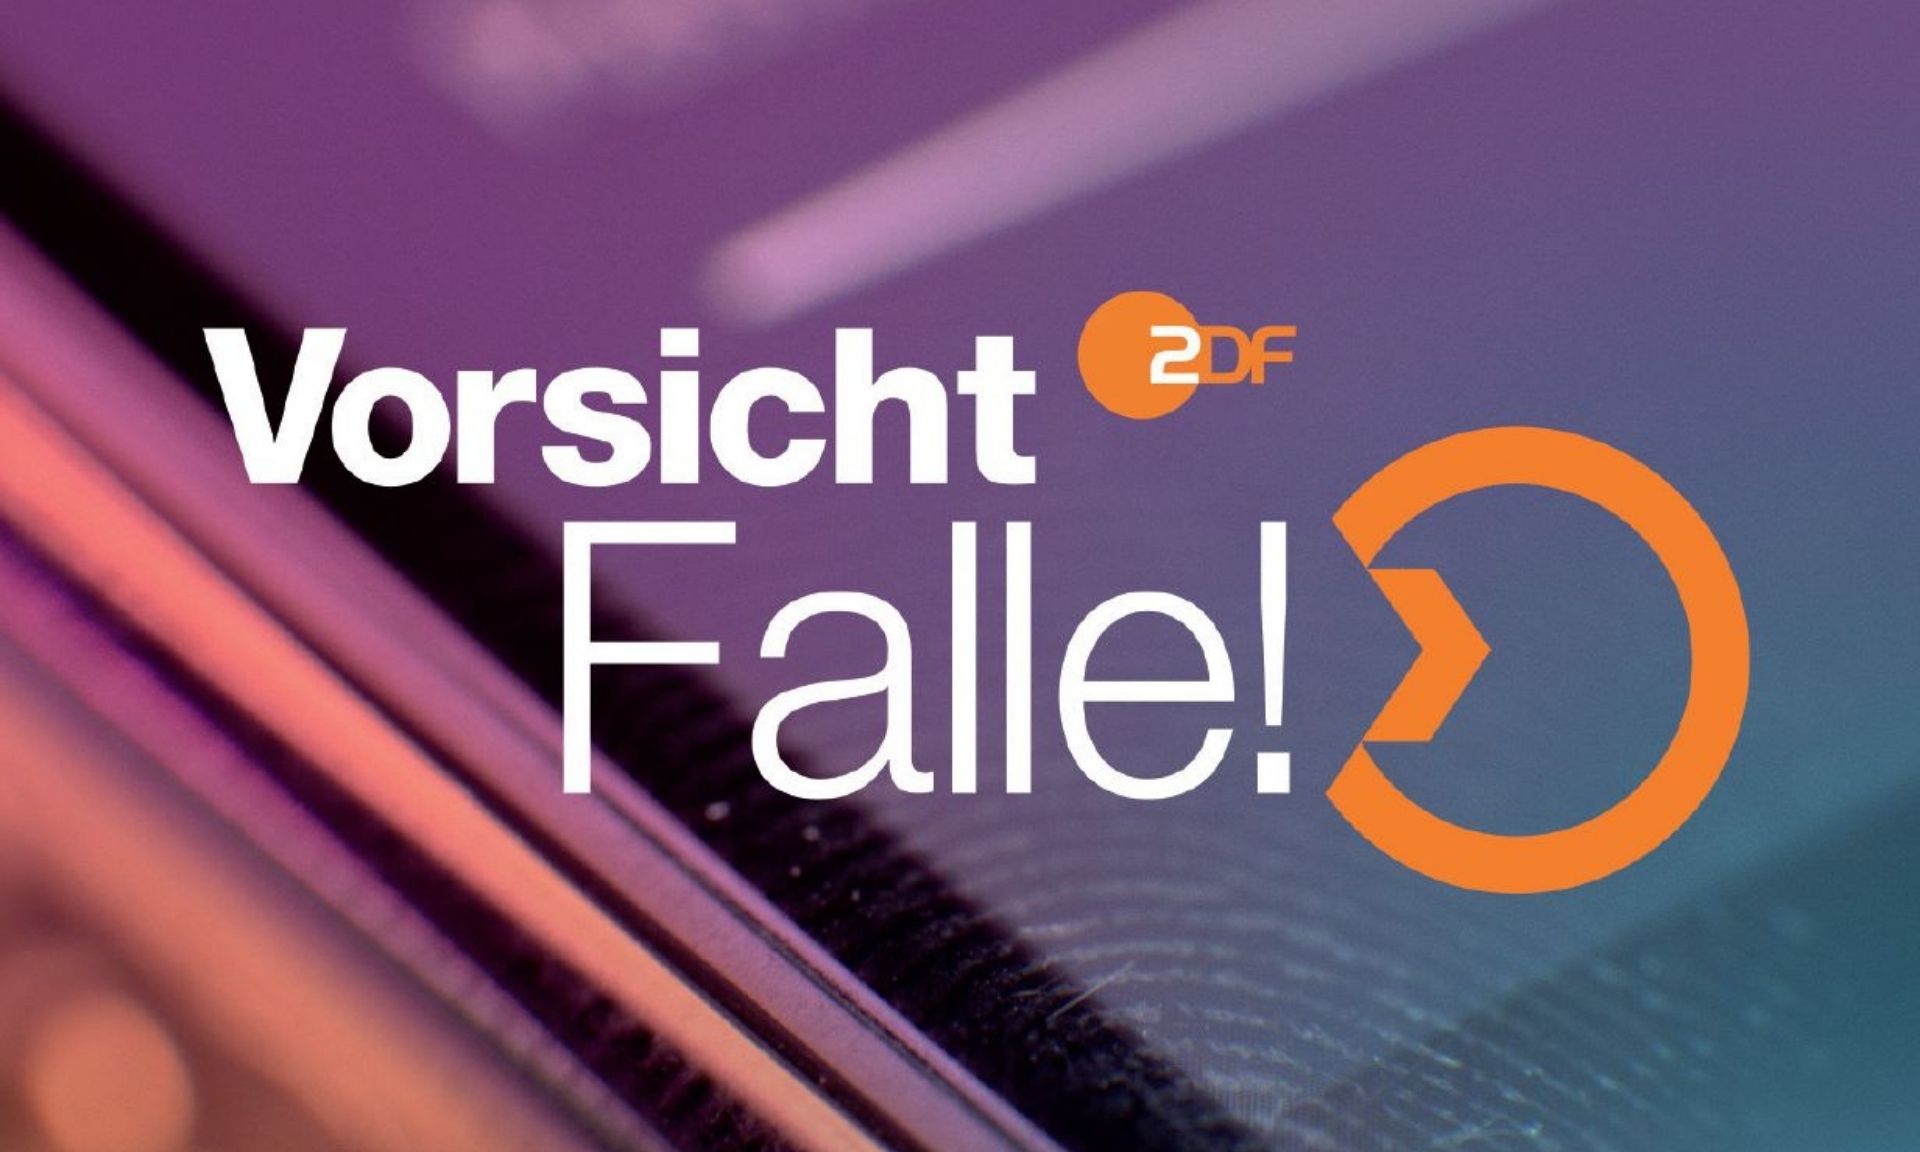 Logo der ZDF-Sendung "Vorsicht, Falle!"